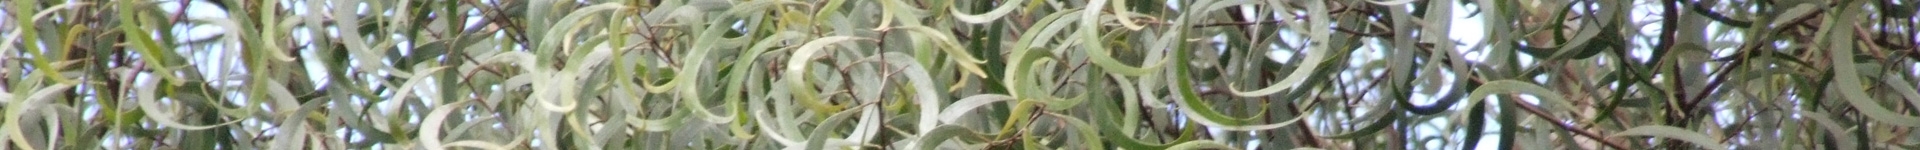 ornamental bar of koa leaves